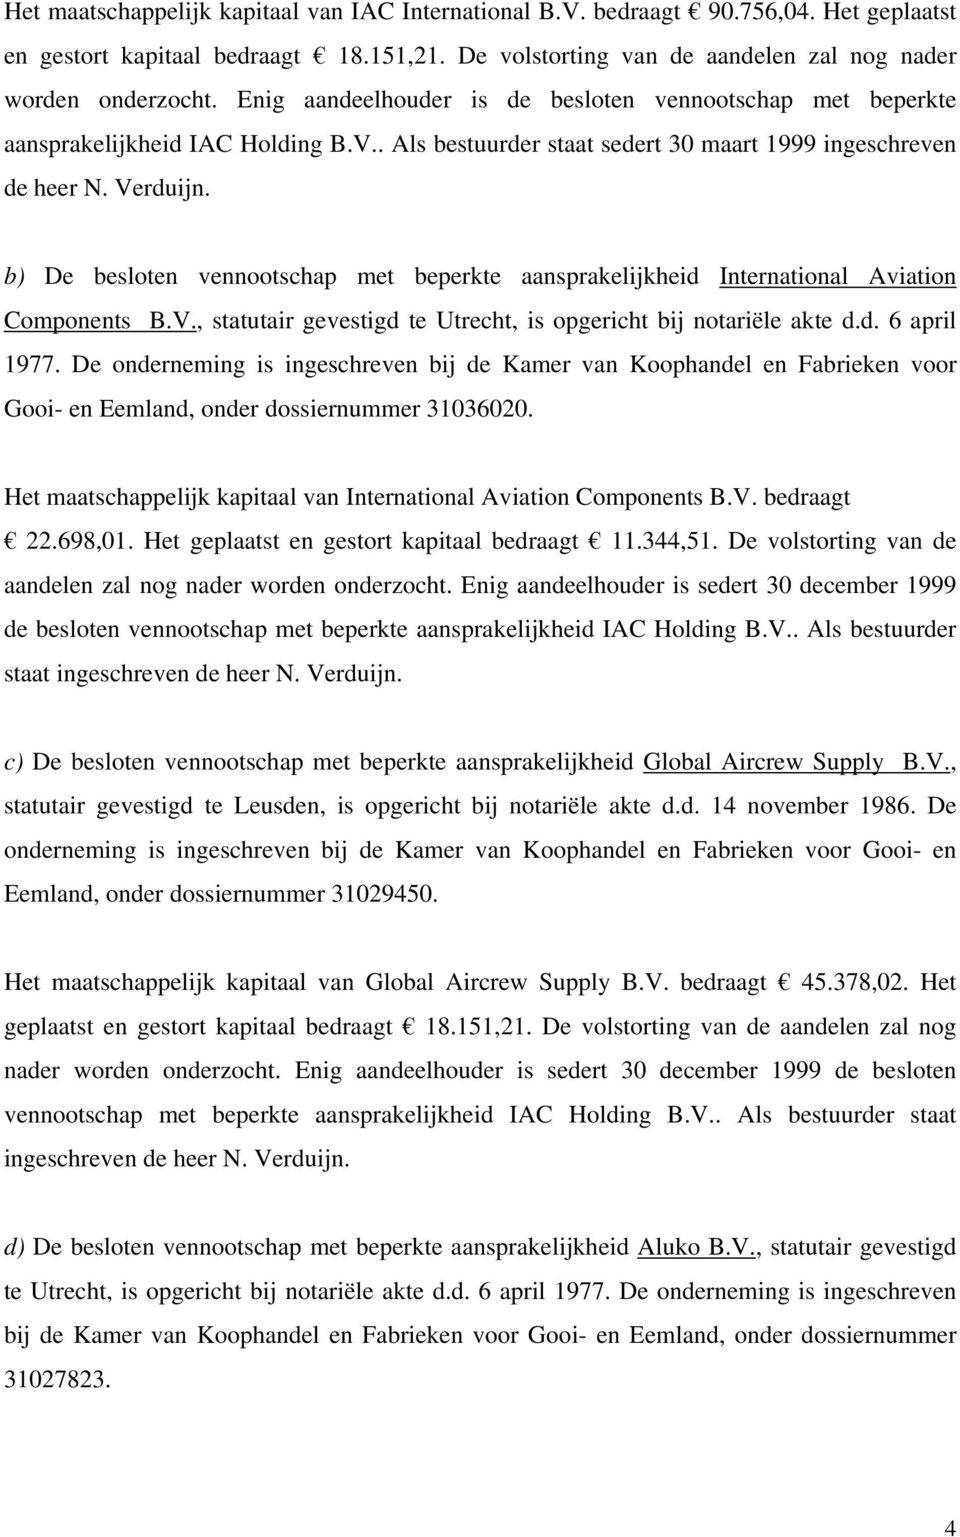 b) De besloten vennootschap met beperkte aansprakelijkheid International Aviation Components B.V., statutair gevestigd te Utrecht, is opgericht bij notariële akte d.d. 6 april 1977.